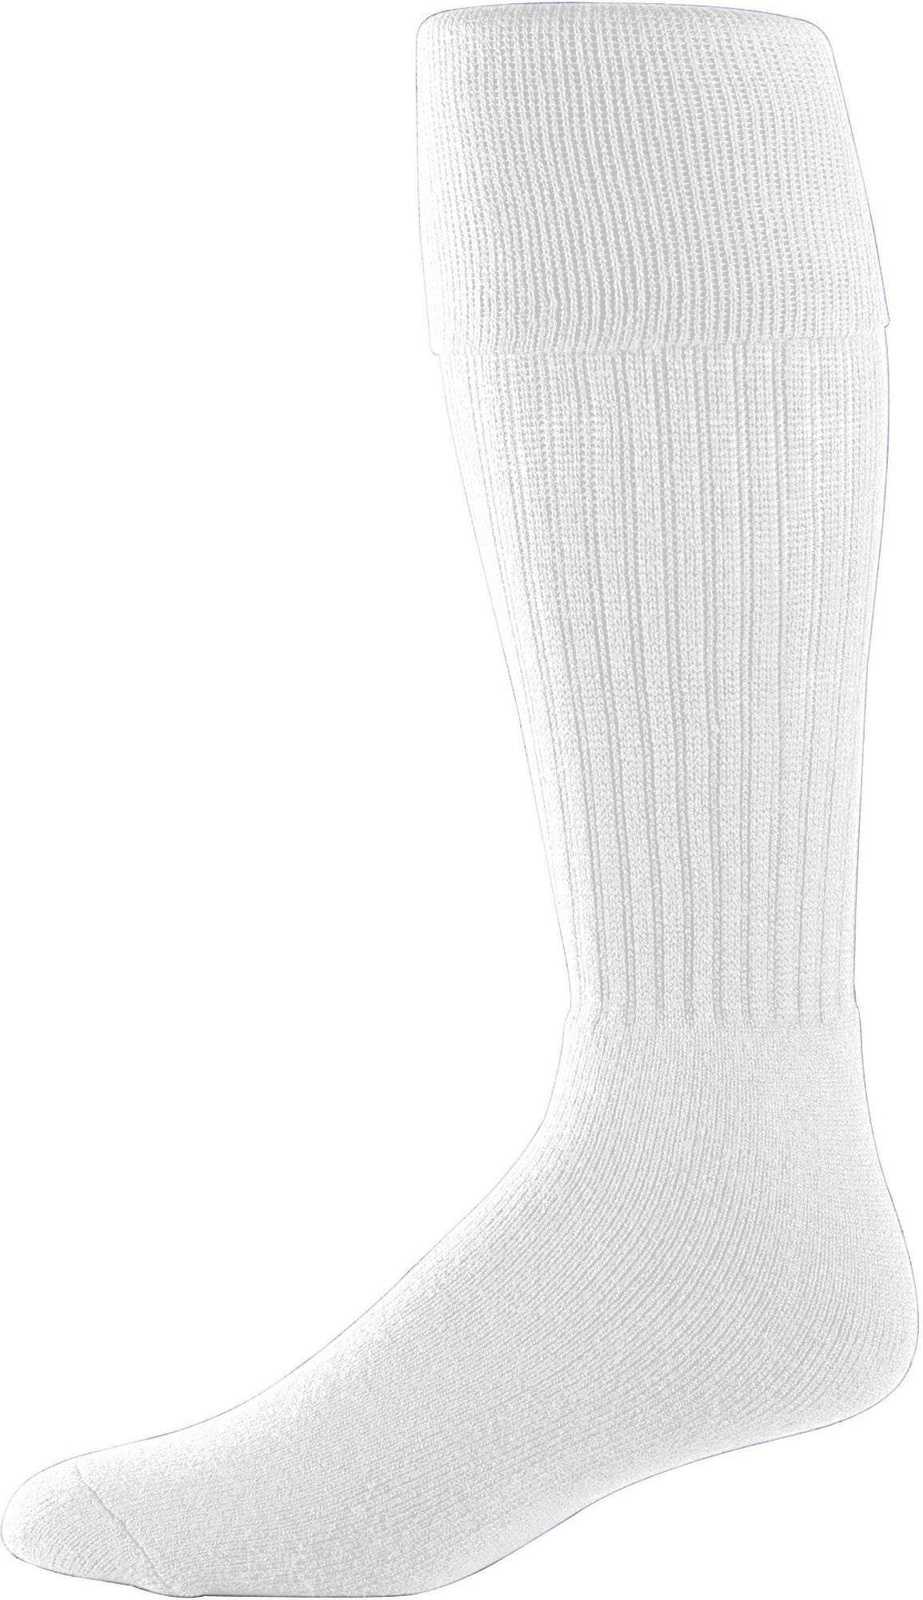 Augusta 6031 Soccer Knee High Socks - White - HIT a Double